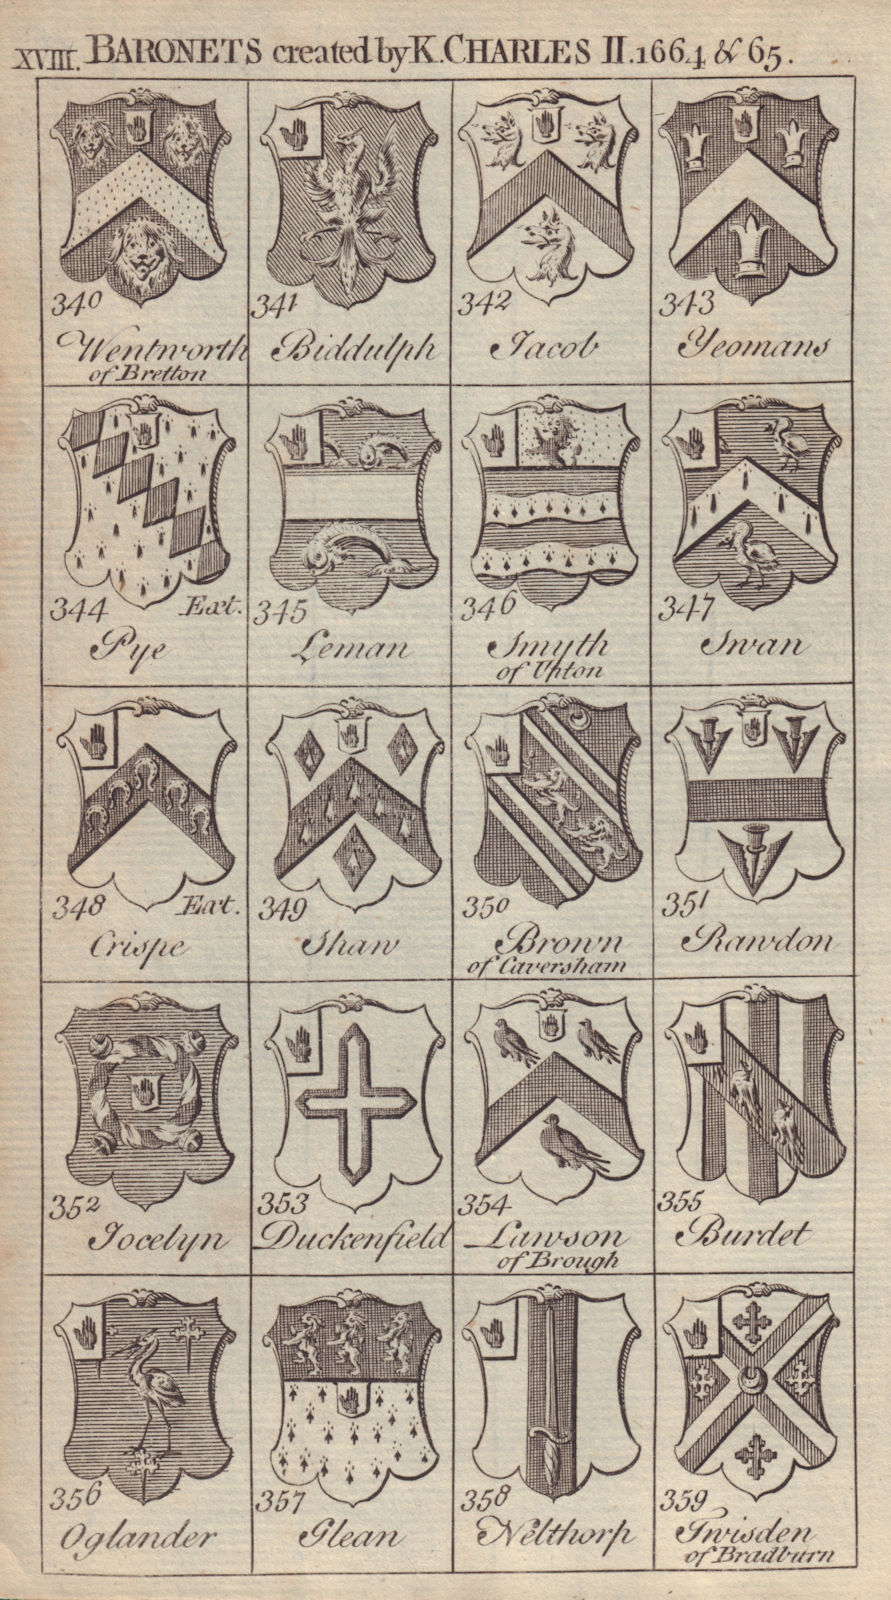 Charles II Baronets 1664-65 Biddulph Jacob Yeomans Pye Leman Swan Crispe… 1752